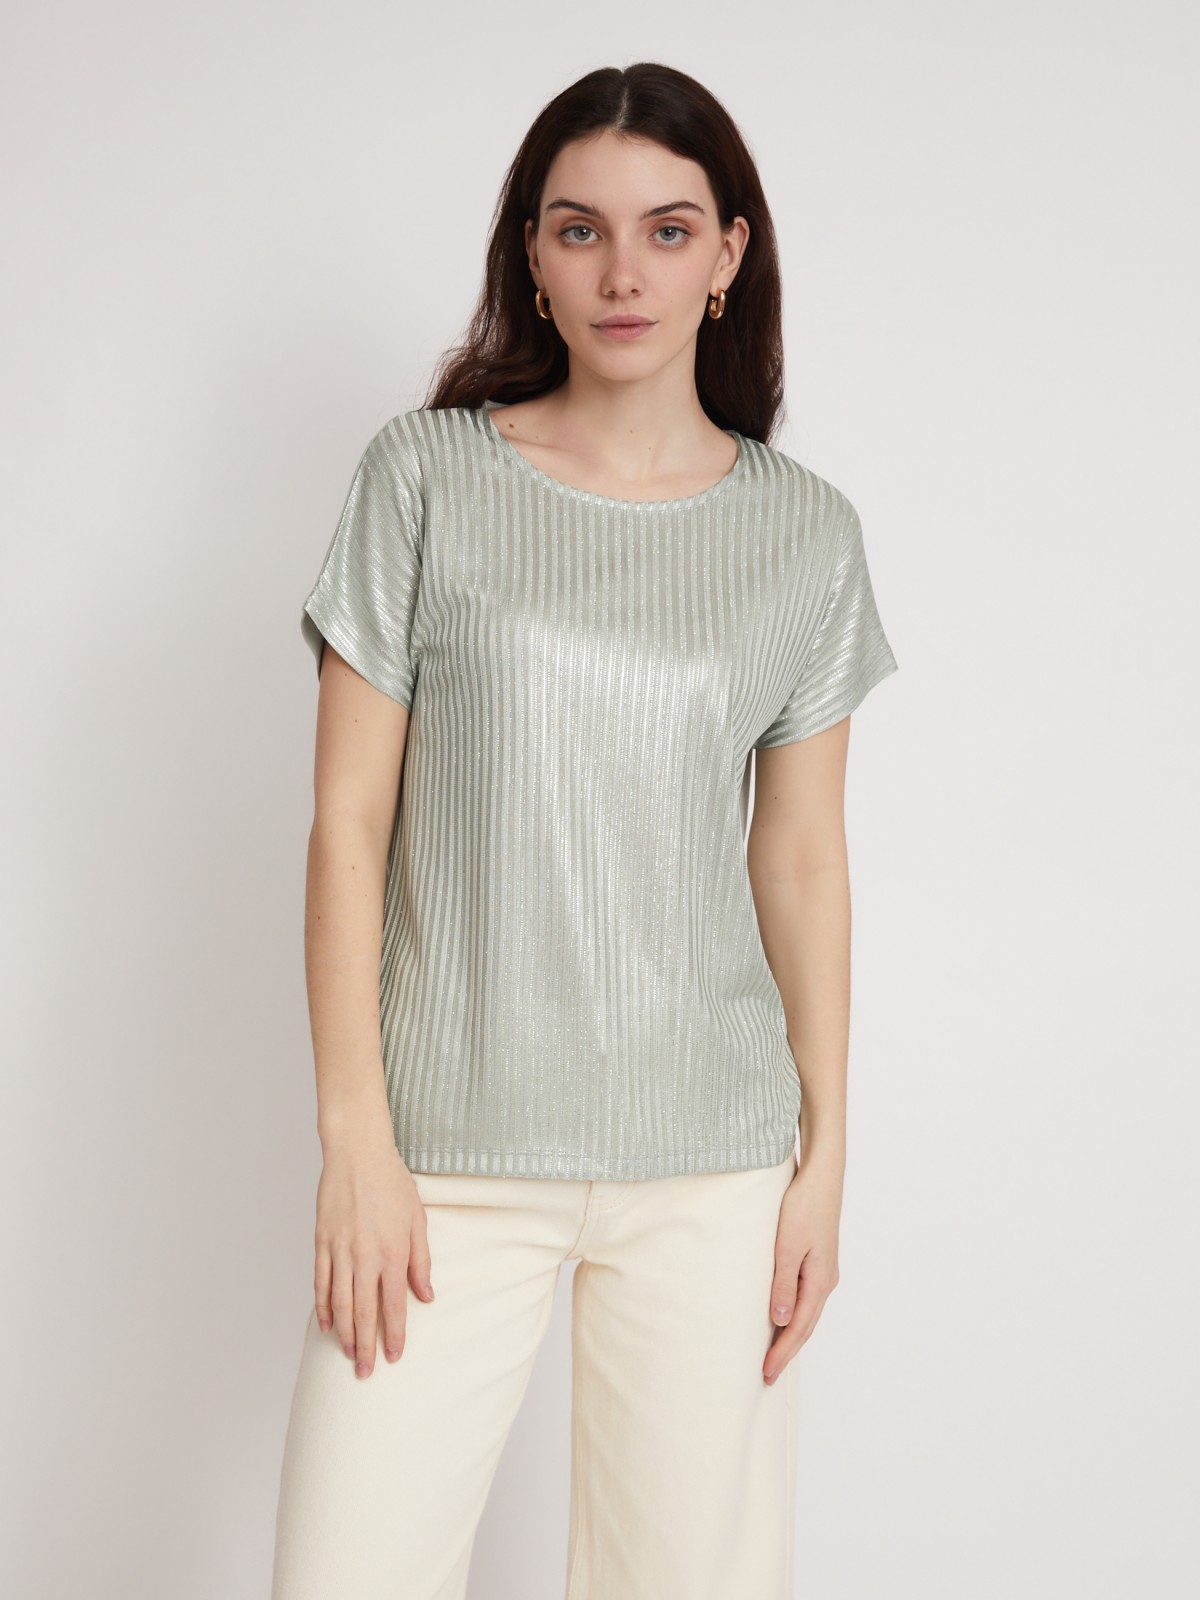 Топ-блузка с блеском zolla 023233226013, цвет светло-зеленый, размер XS - фото 5